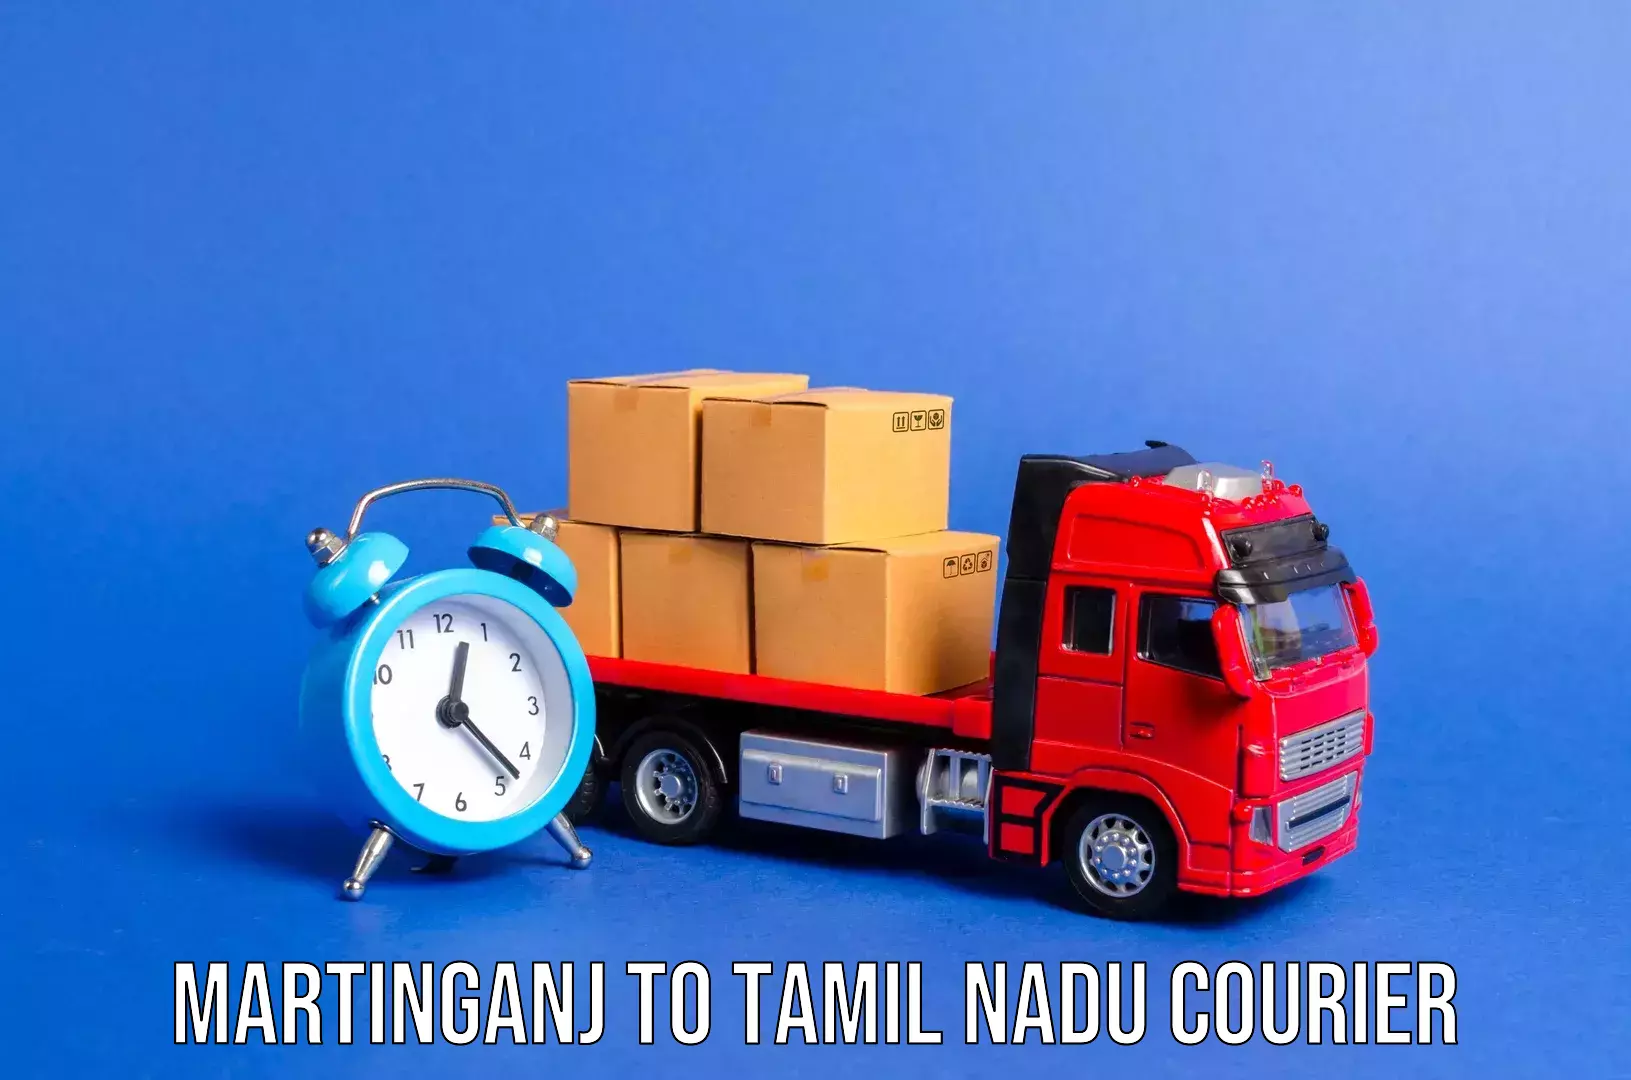 Baggage handling services Martinganj to Thiruvadanai